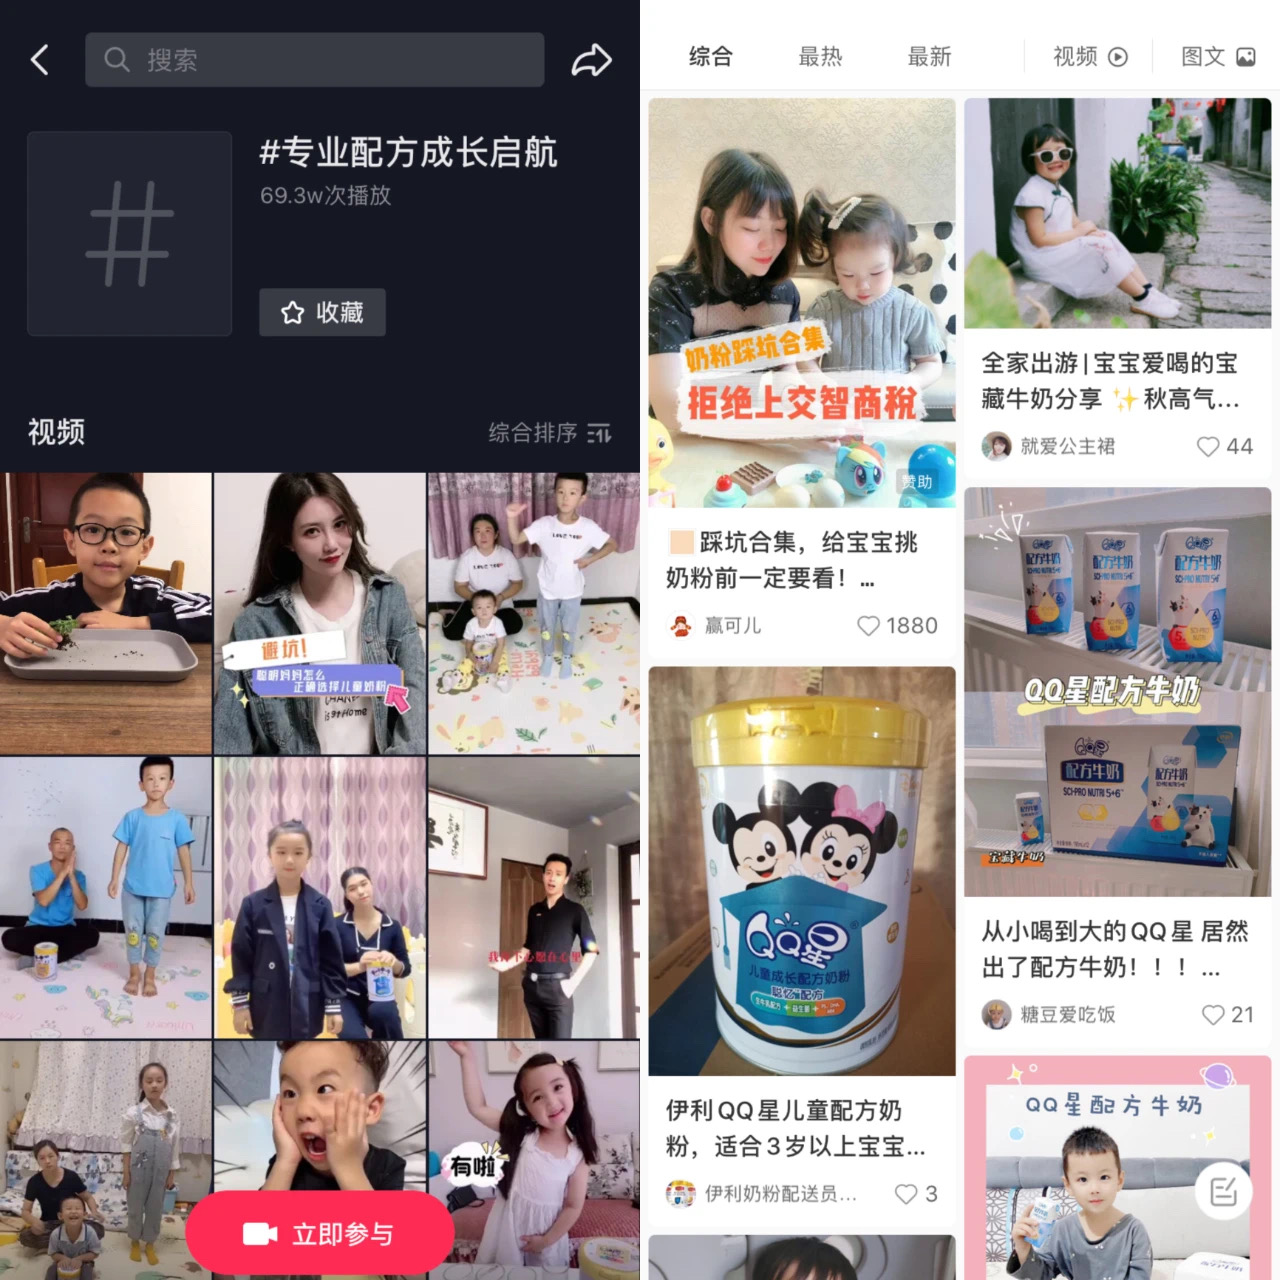 KOL marketing Yili QQ Star Children’s Milk Powder